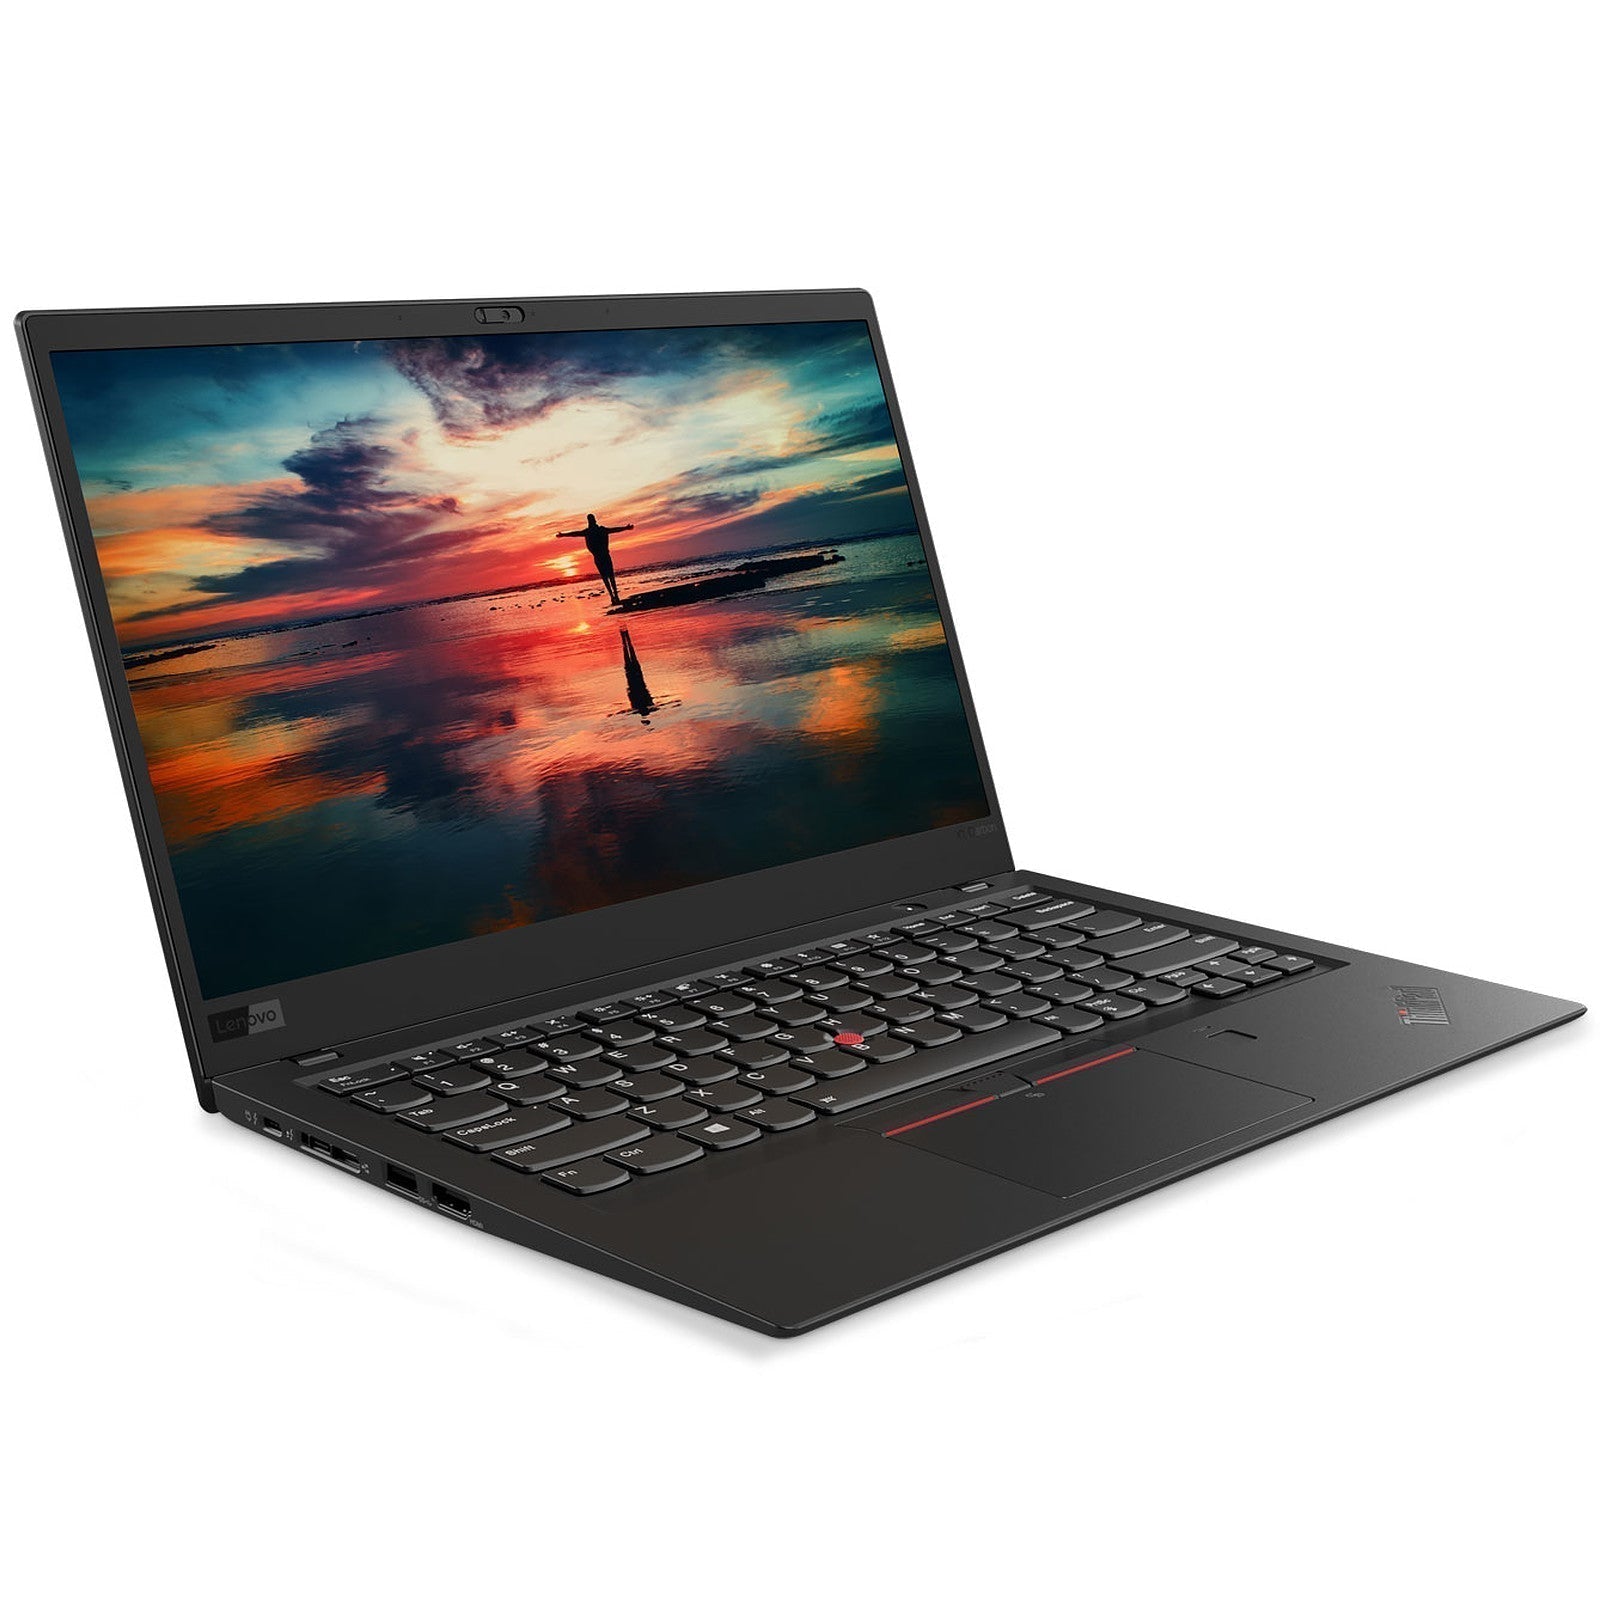 Billede af Lenovo ThinkPad X1 Carbon 7. gen. Touch | i7 | 16GB | 256GB SSD - Brugt - Meget god stand